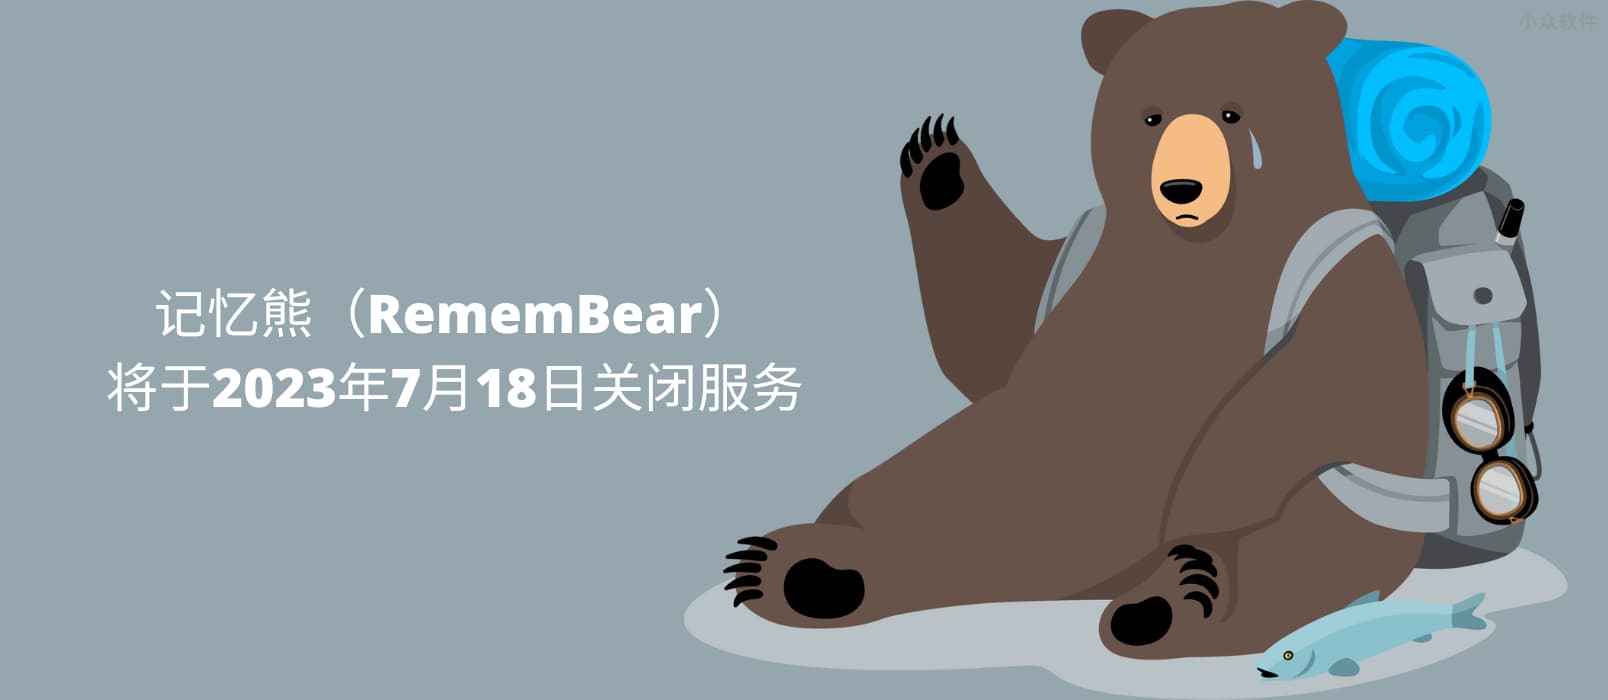 记忆熊（RememBear）将于2023年7月18日关闭服务